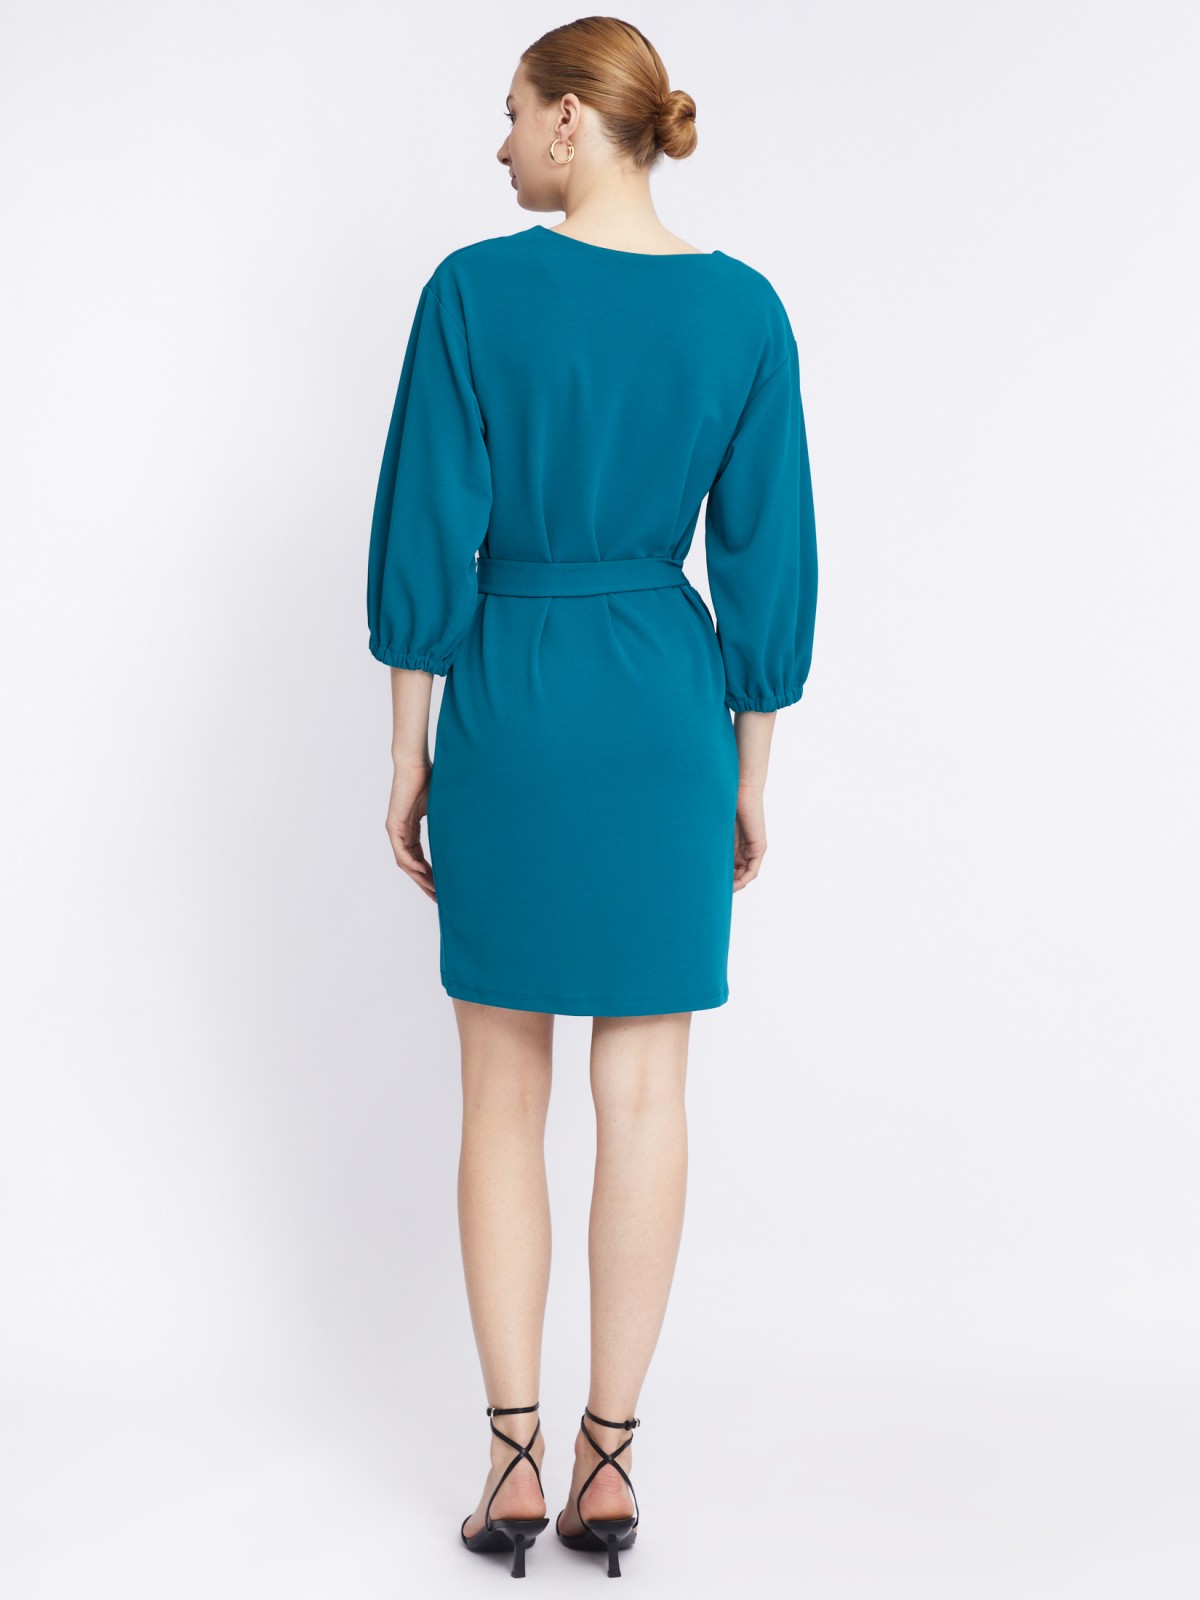 Платье с объёмными рукавами и поясом zolla 22331819F062, цвет темно-бирюзовый, размер S - фото 6